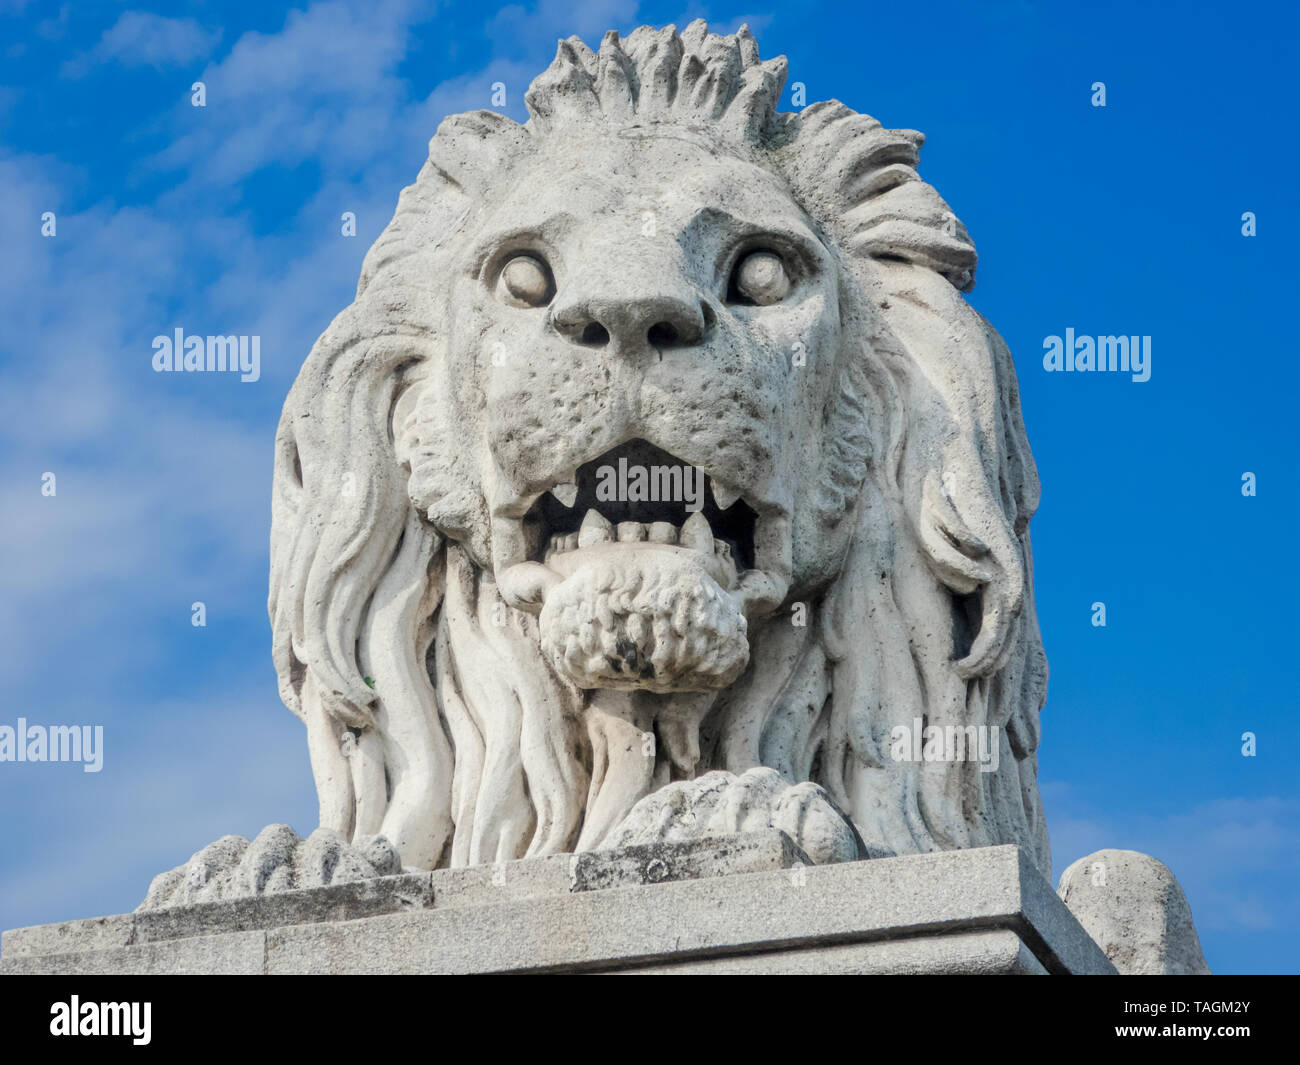 Cerca de la estatua de un león en un puente en Budapest Foto de stock